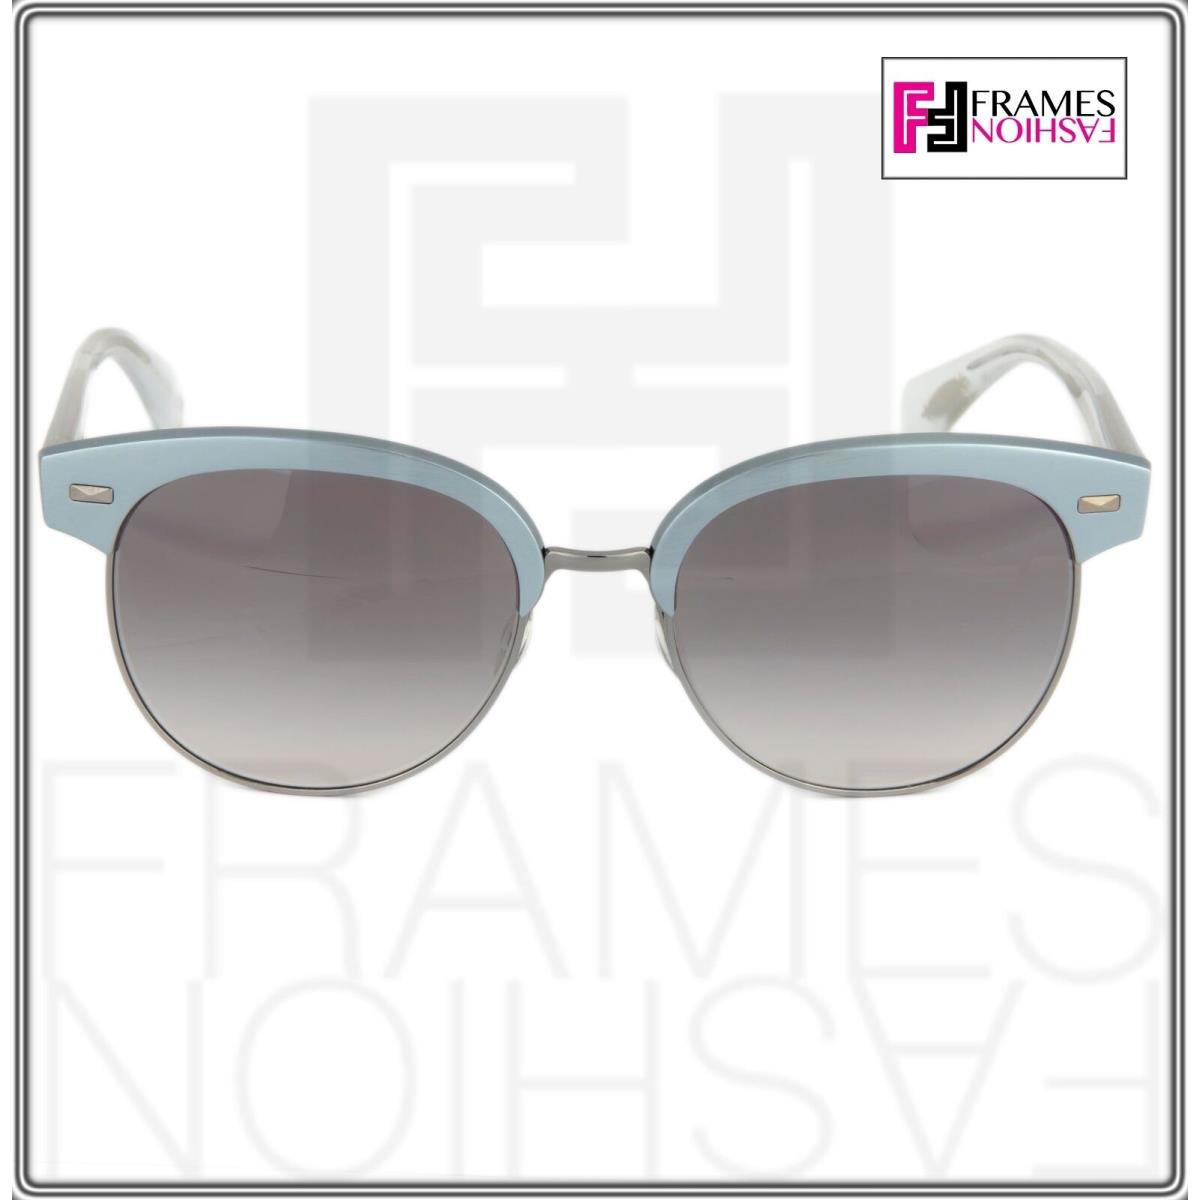 Oliver Peoples sunglasses  - Crystal frost Gunmetal Frame, Grey Lens 5